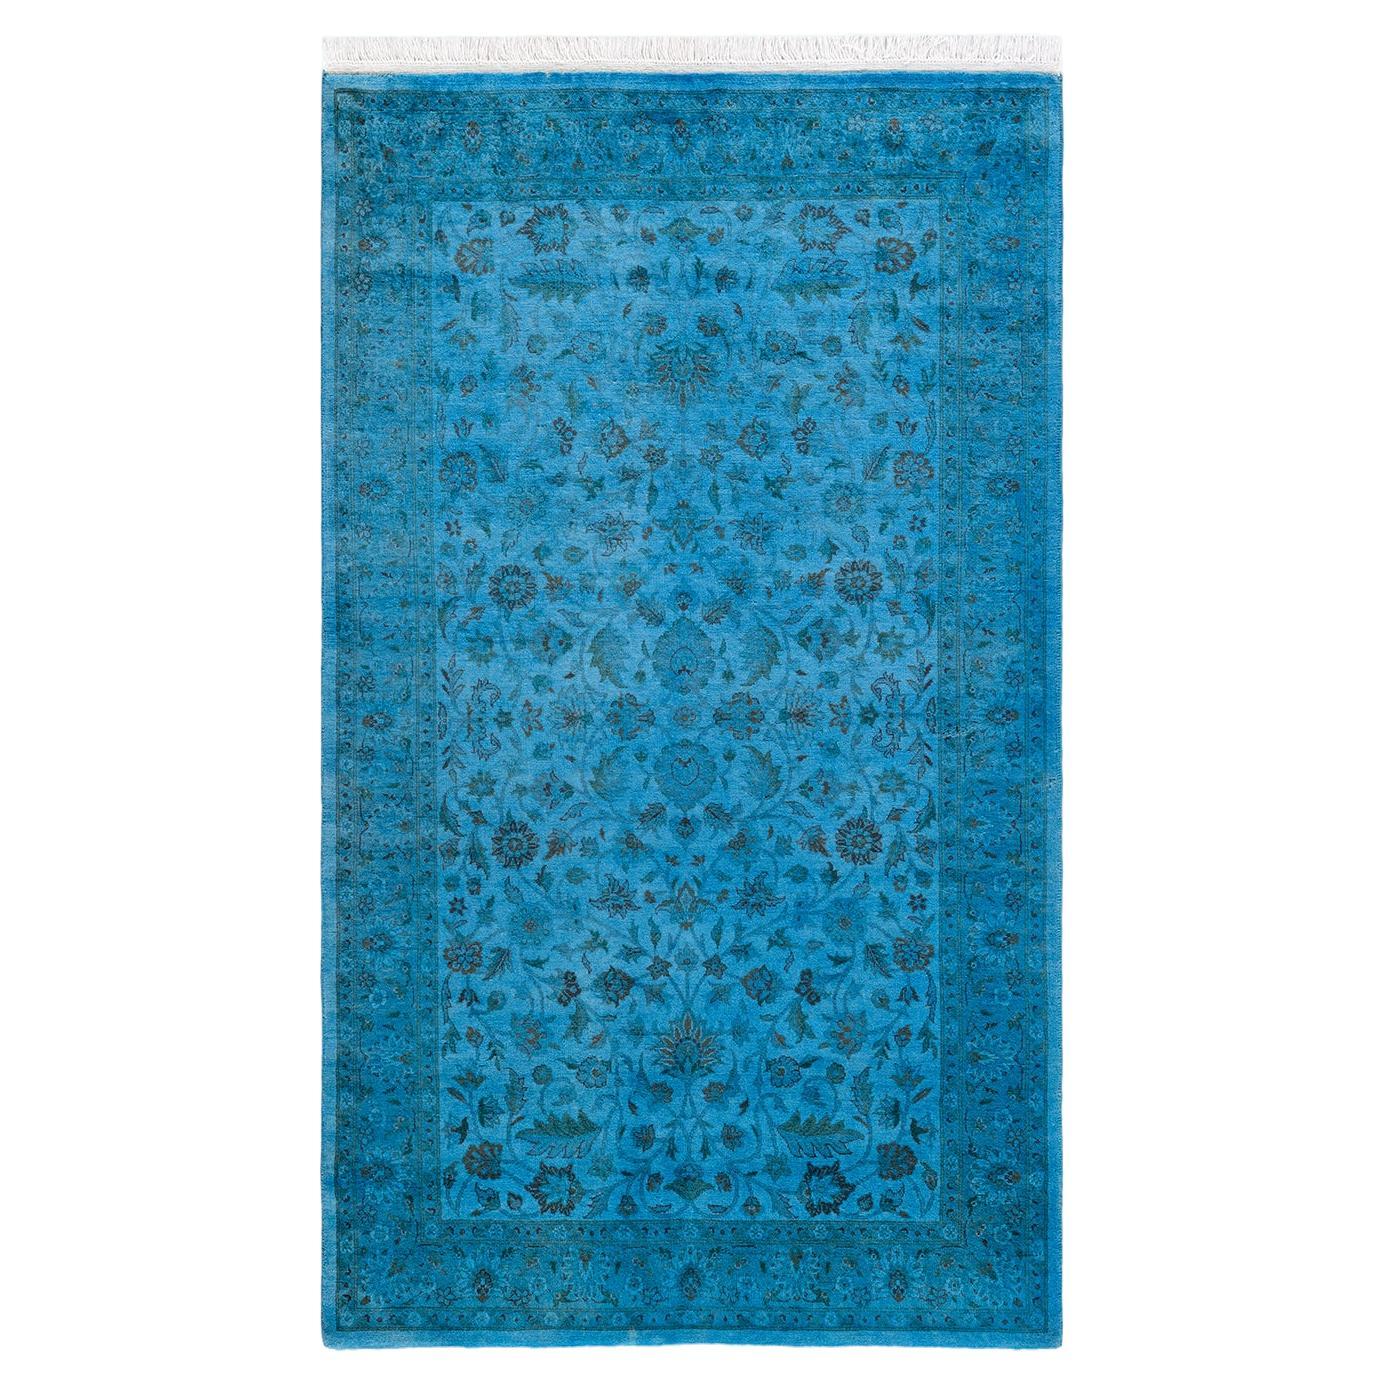 Tappeto contemporaneo in lana sovratinta annodata a mano di colore blu